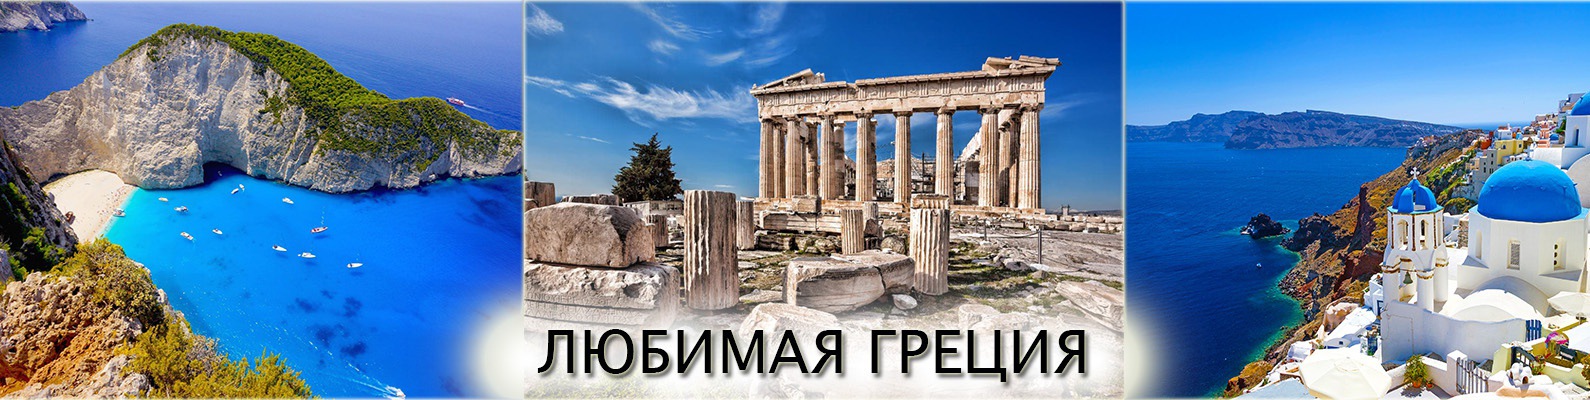 Греческая без слов. Арголида в древней Греции. Греция надпись. Реклама путешествия в Грецию. Любимая Греция.